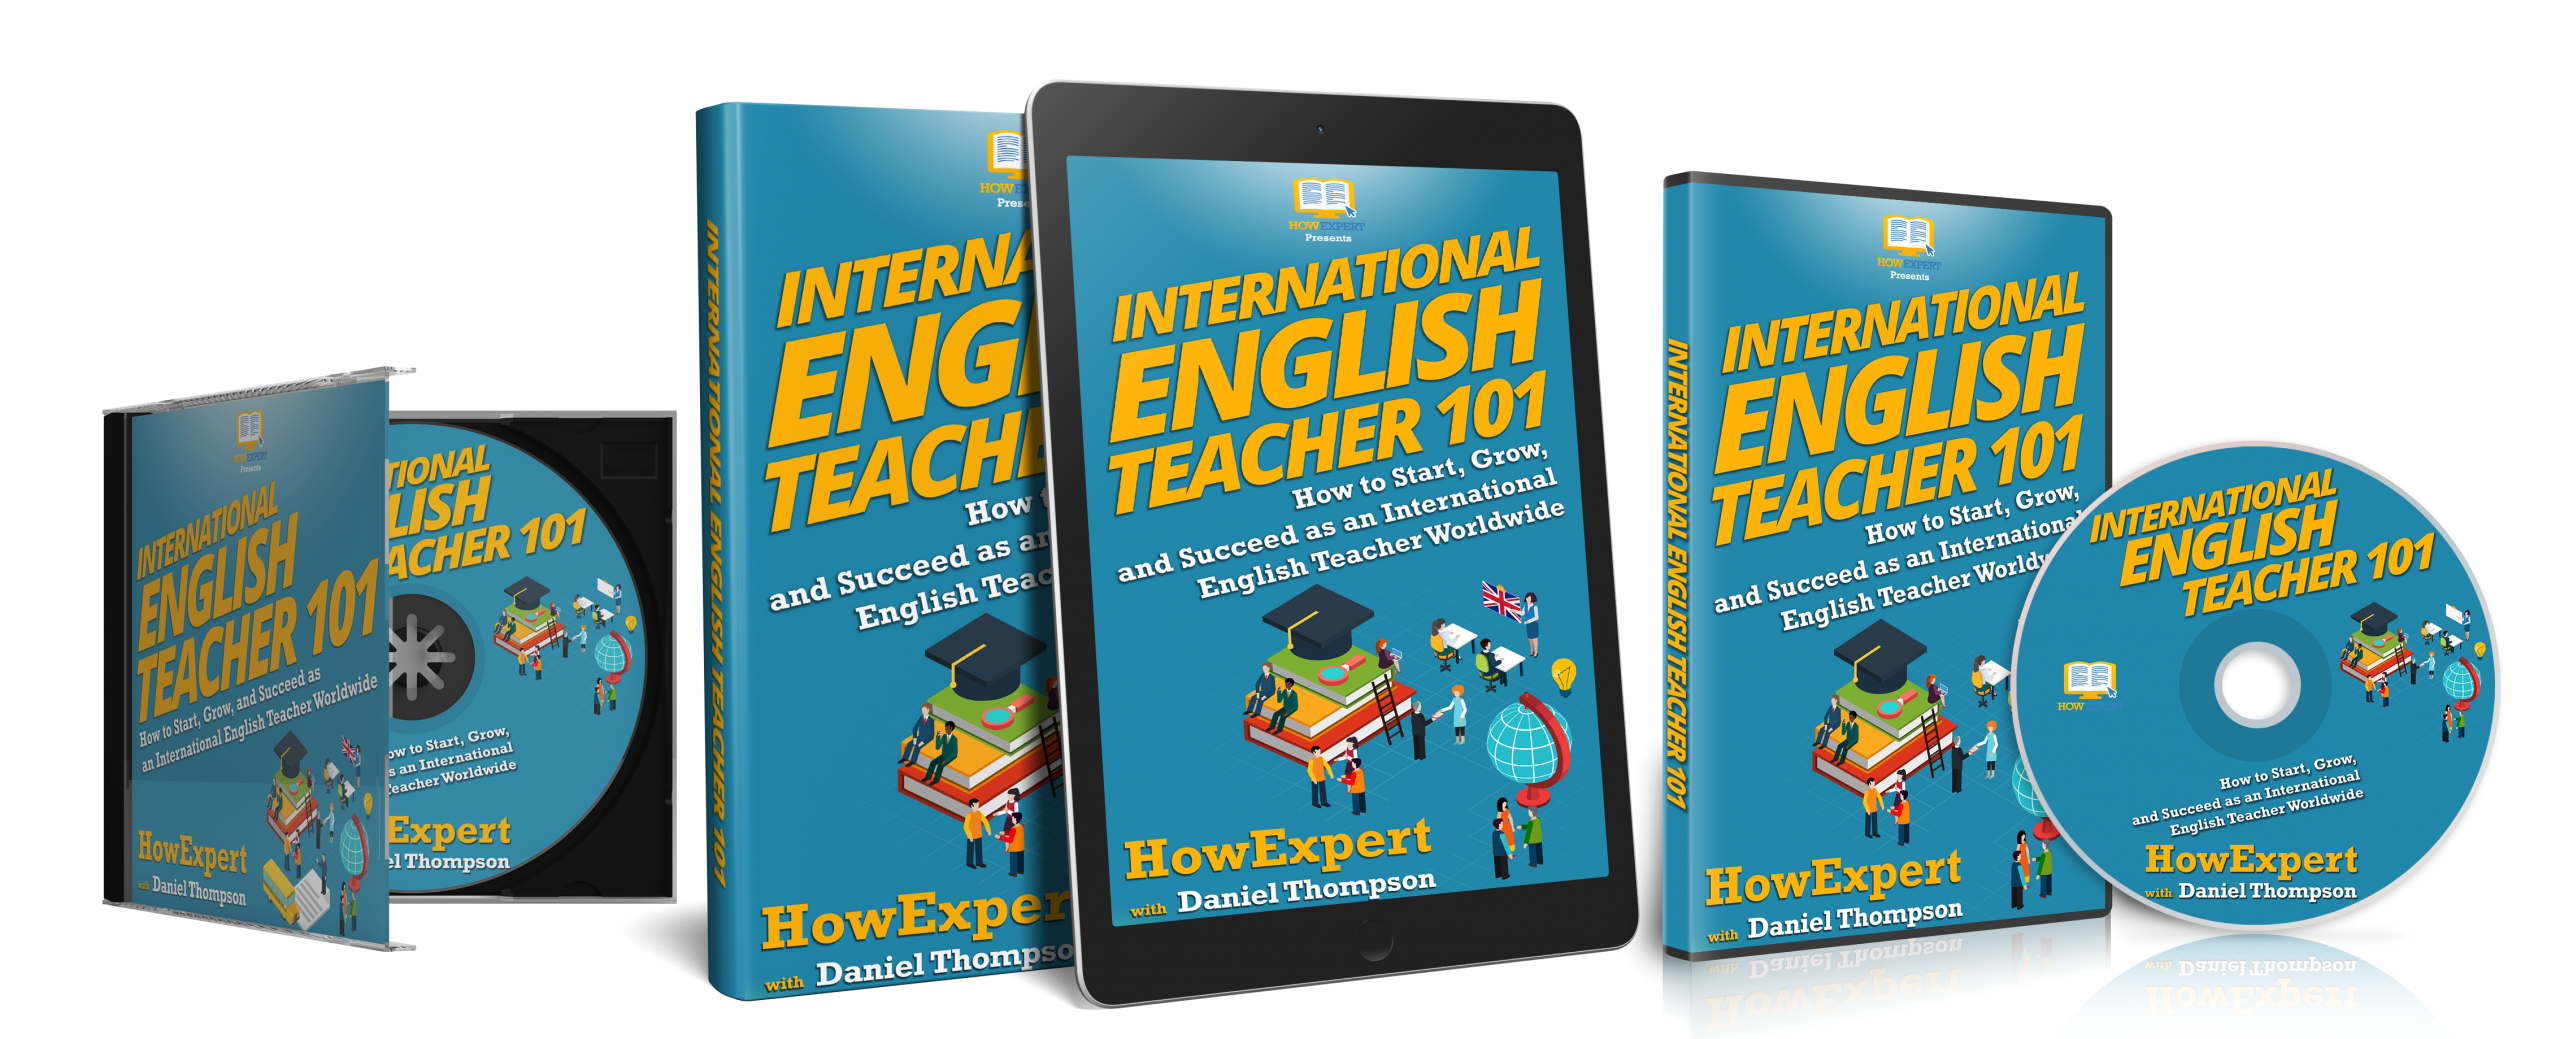 howexpert-guides-international-english-teacher-101-howexpert